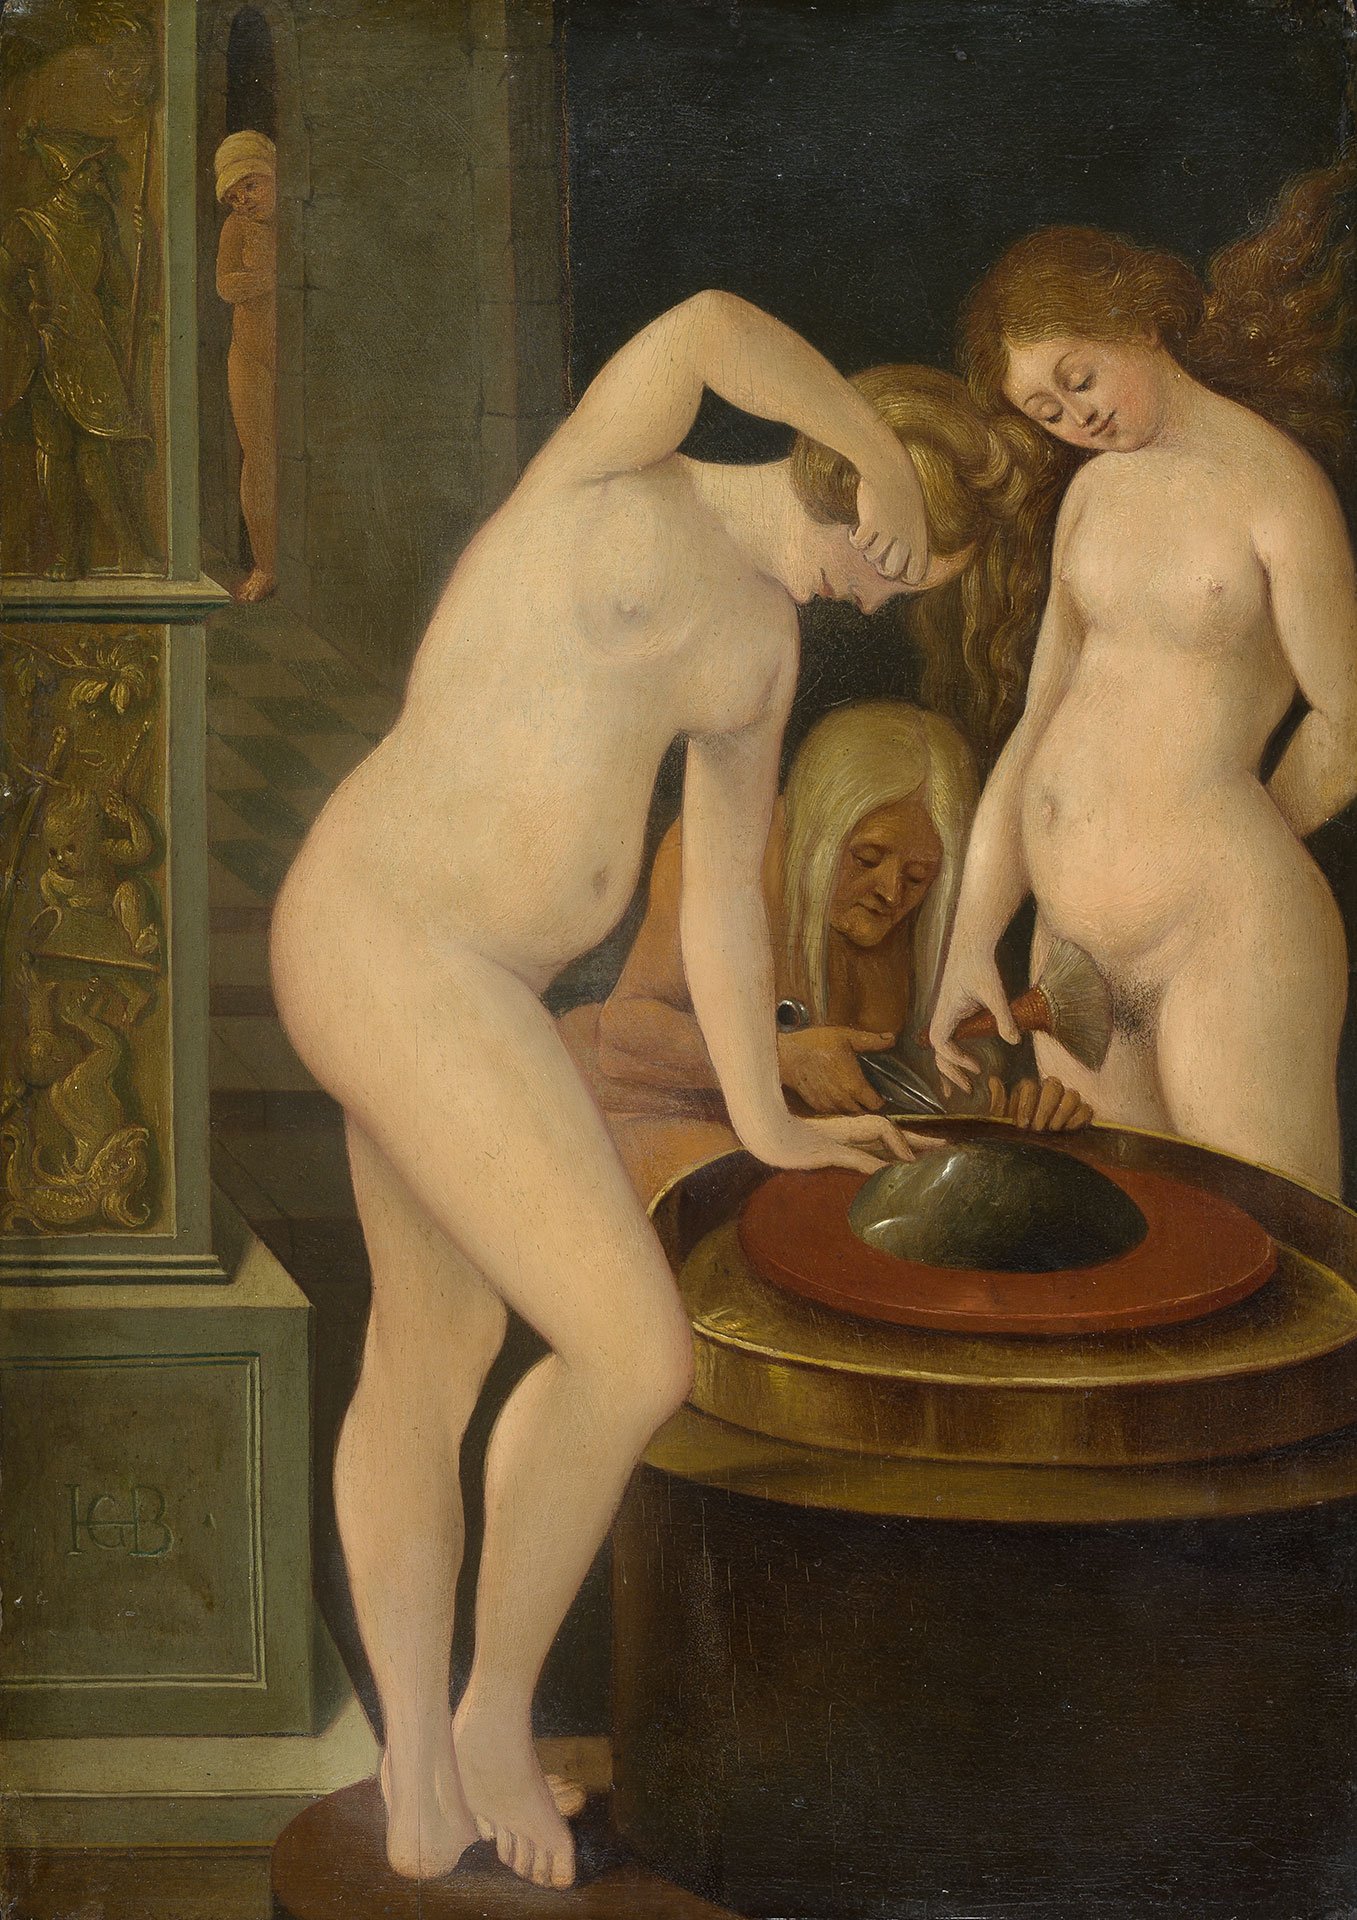 Abbildung des Werks "Frauenbad mit Spiegel“ nach einem Werk des Künstlers Hans Baldung Grien. Es zeigt zwei nackte Frauen, wie sie sich waschen.